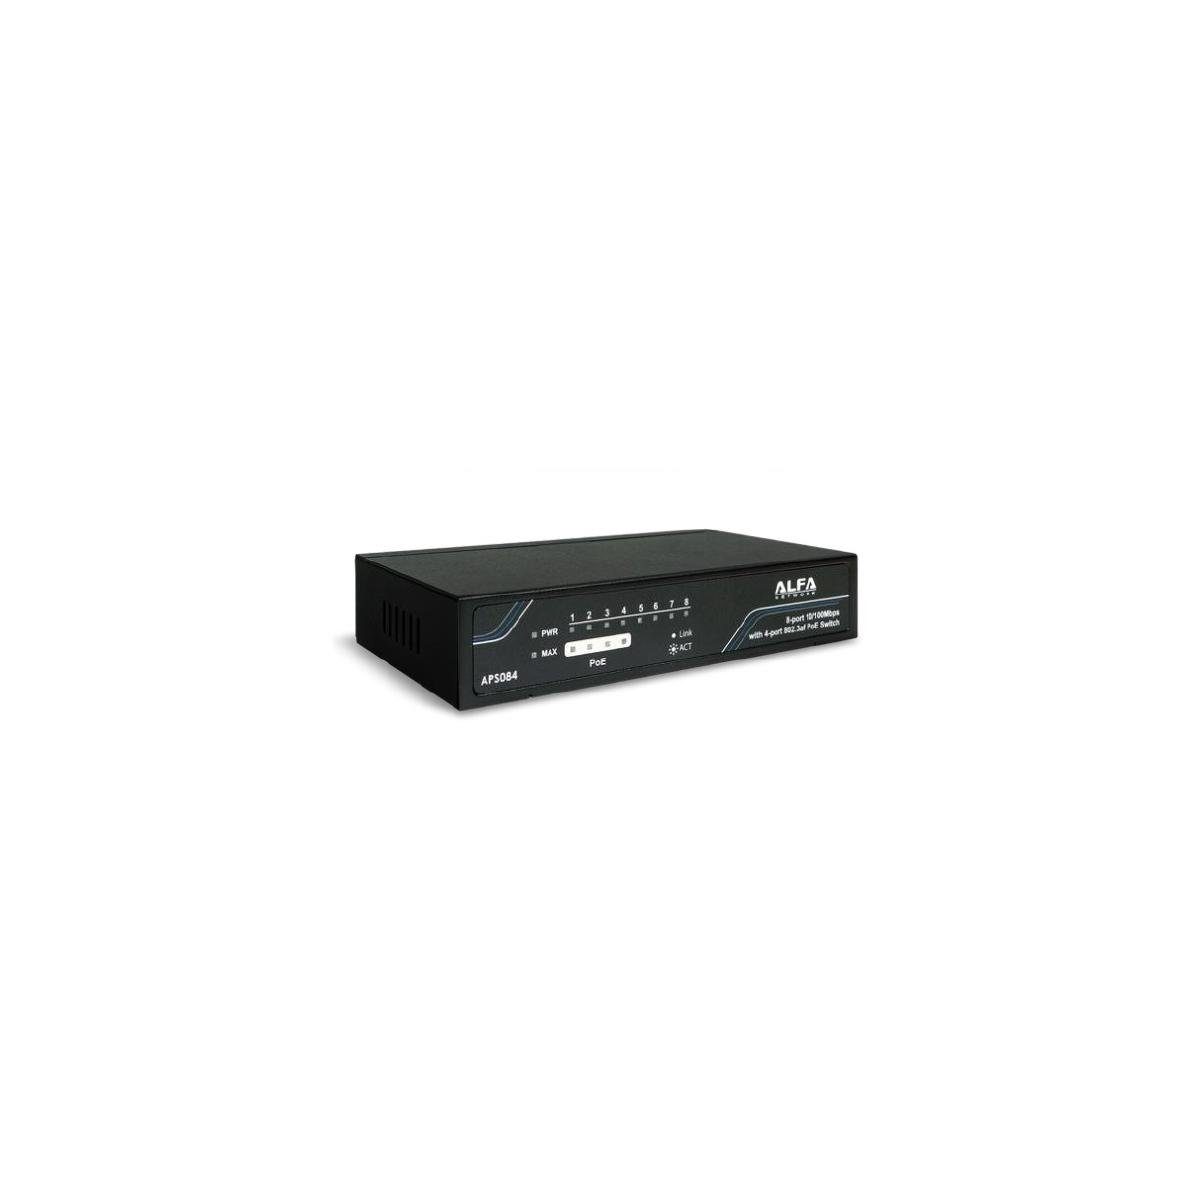 Alfa APS084 - Desktop Ethernet Switch, 8-Port 10/100 Mbps mit... Netzwerk-Switch